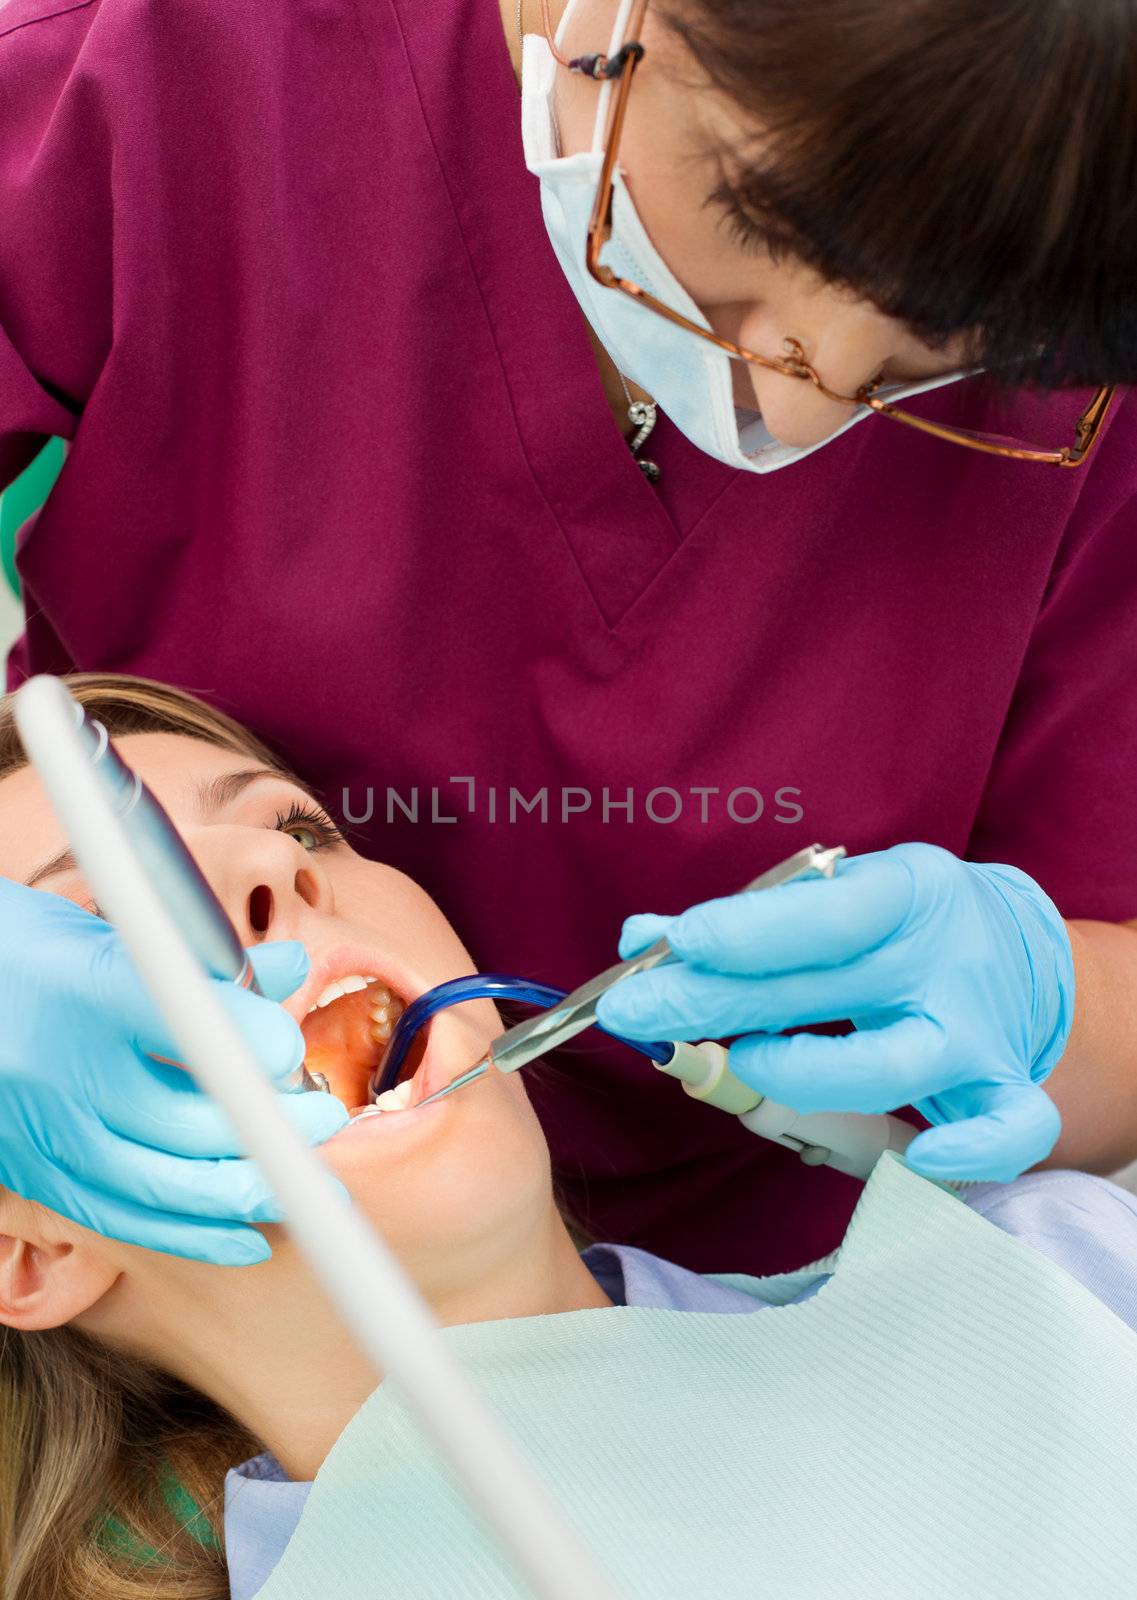 Dentist working patient by vilevi